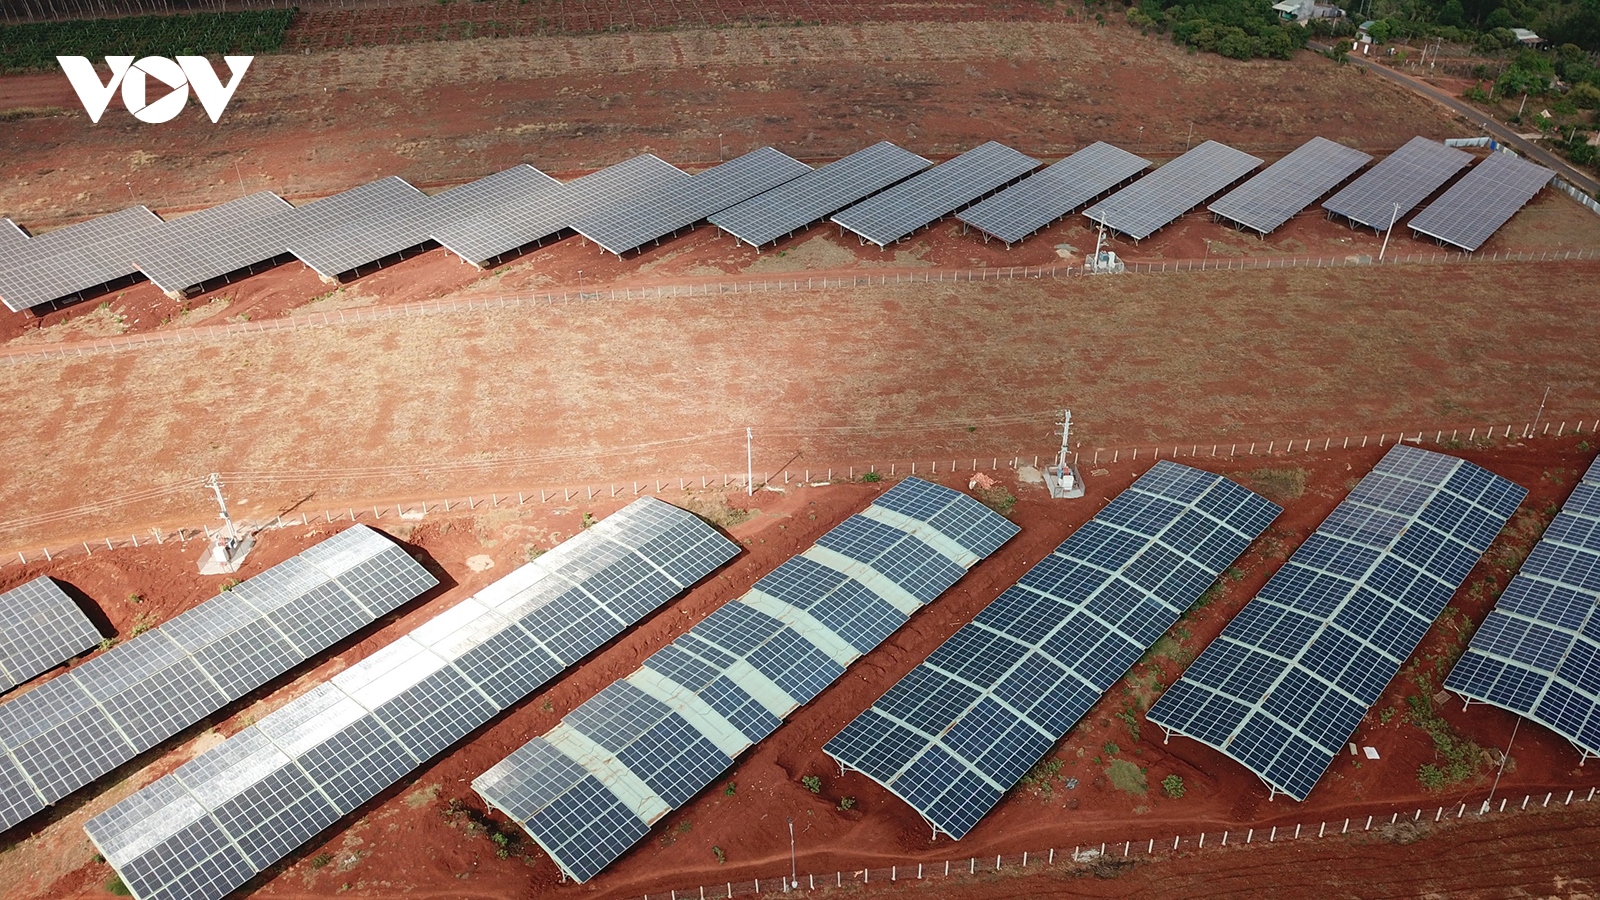 Vẽ dự án điện mặt trời trên mái trang trại ở Gia Lai: Hơn 300 dự án vi phạm